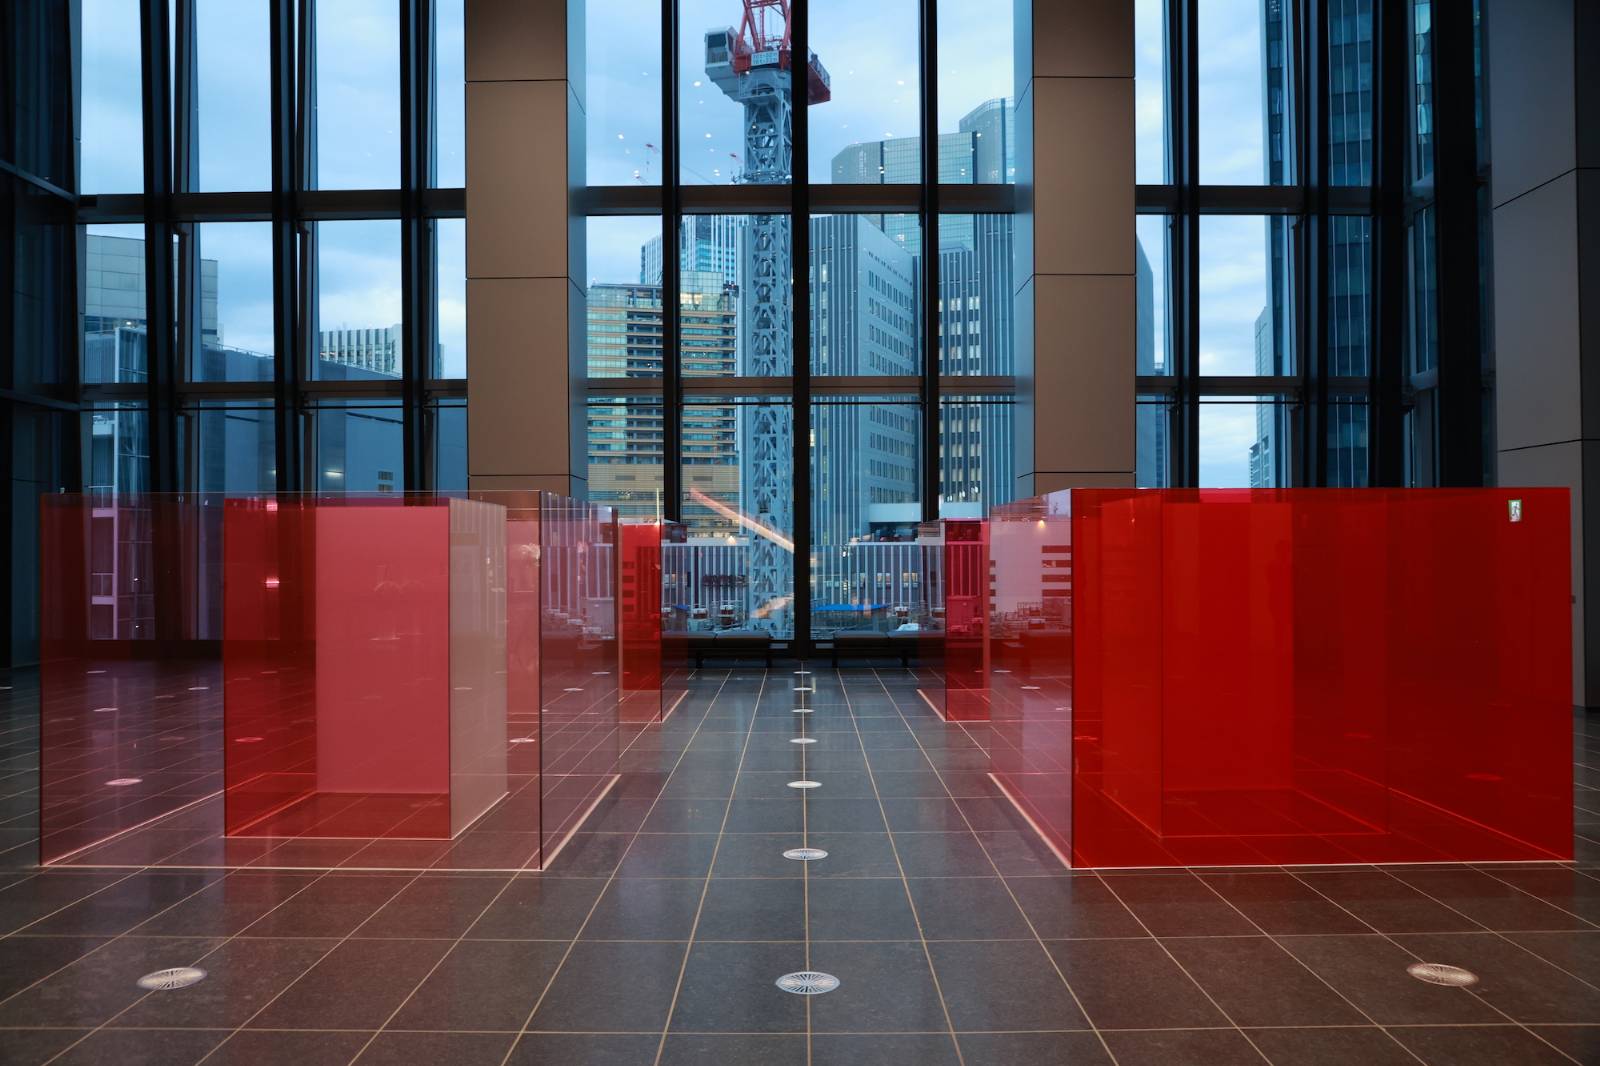 '토라노몽 힐즈 타워' 안에는 대규모 전시 이벤트홀 'node tokyo'가 문을 여는데요, 그를 기념해 전시가 열렸어요. 사진은 Larry Bell의 'PINKY' 이런 사이, 조각의 장면들이 더욱 도시의 정경으로 느껴져요.